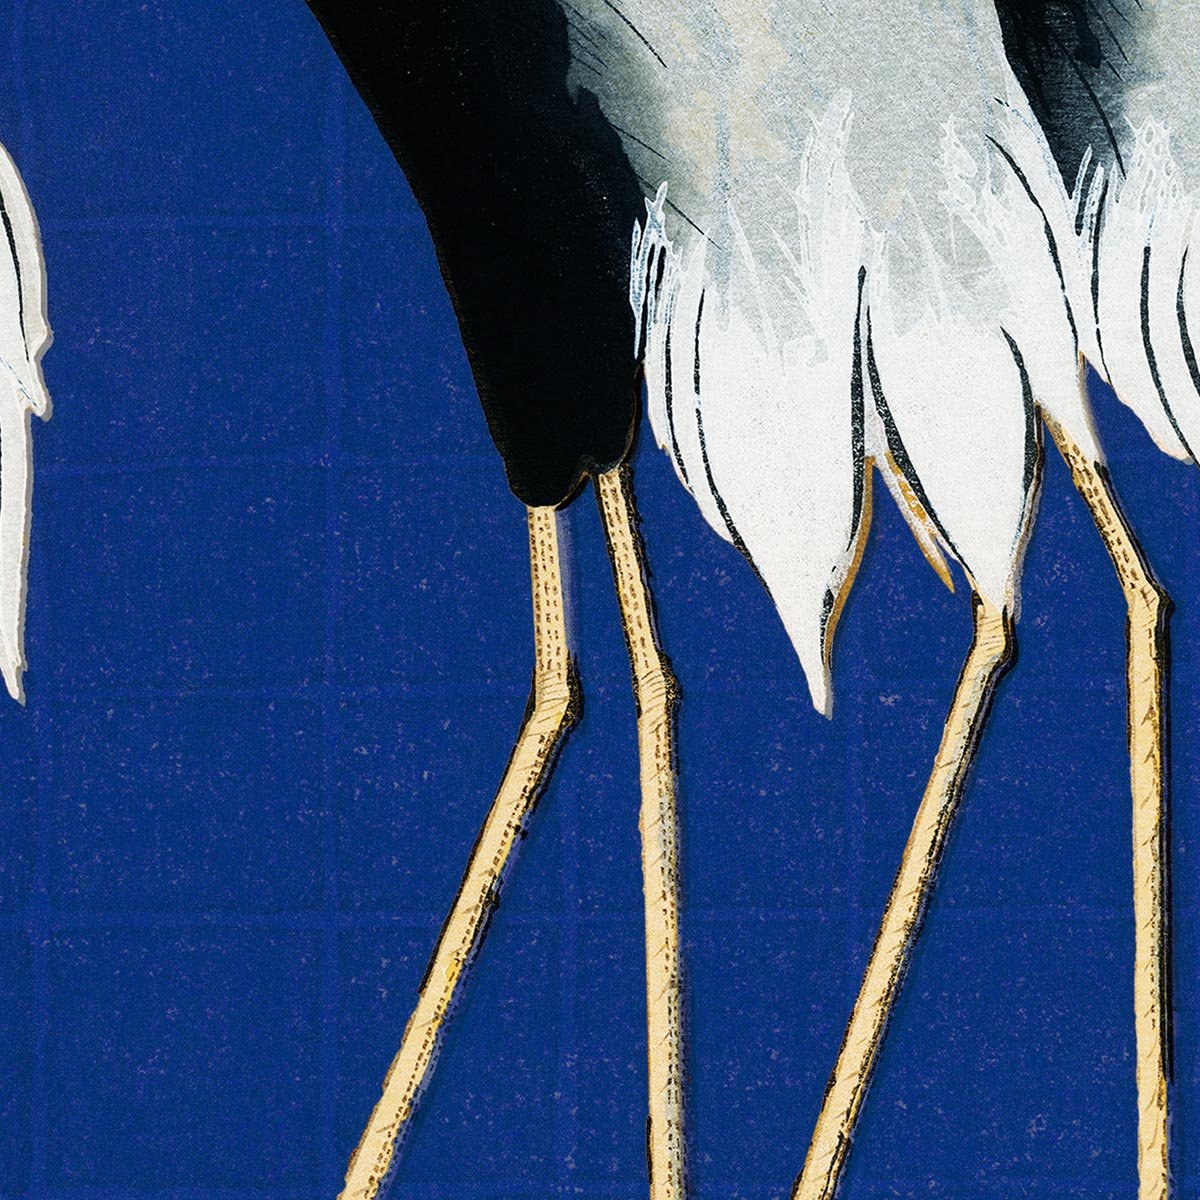 7 Birds by Korin in Blue